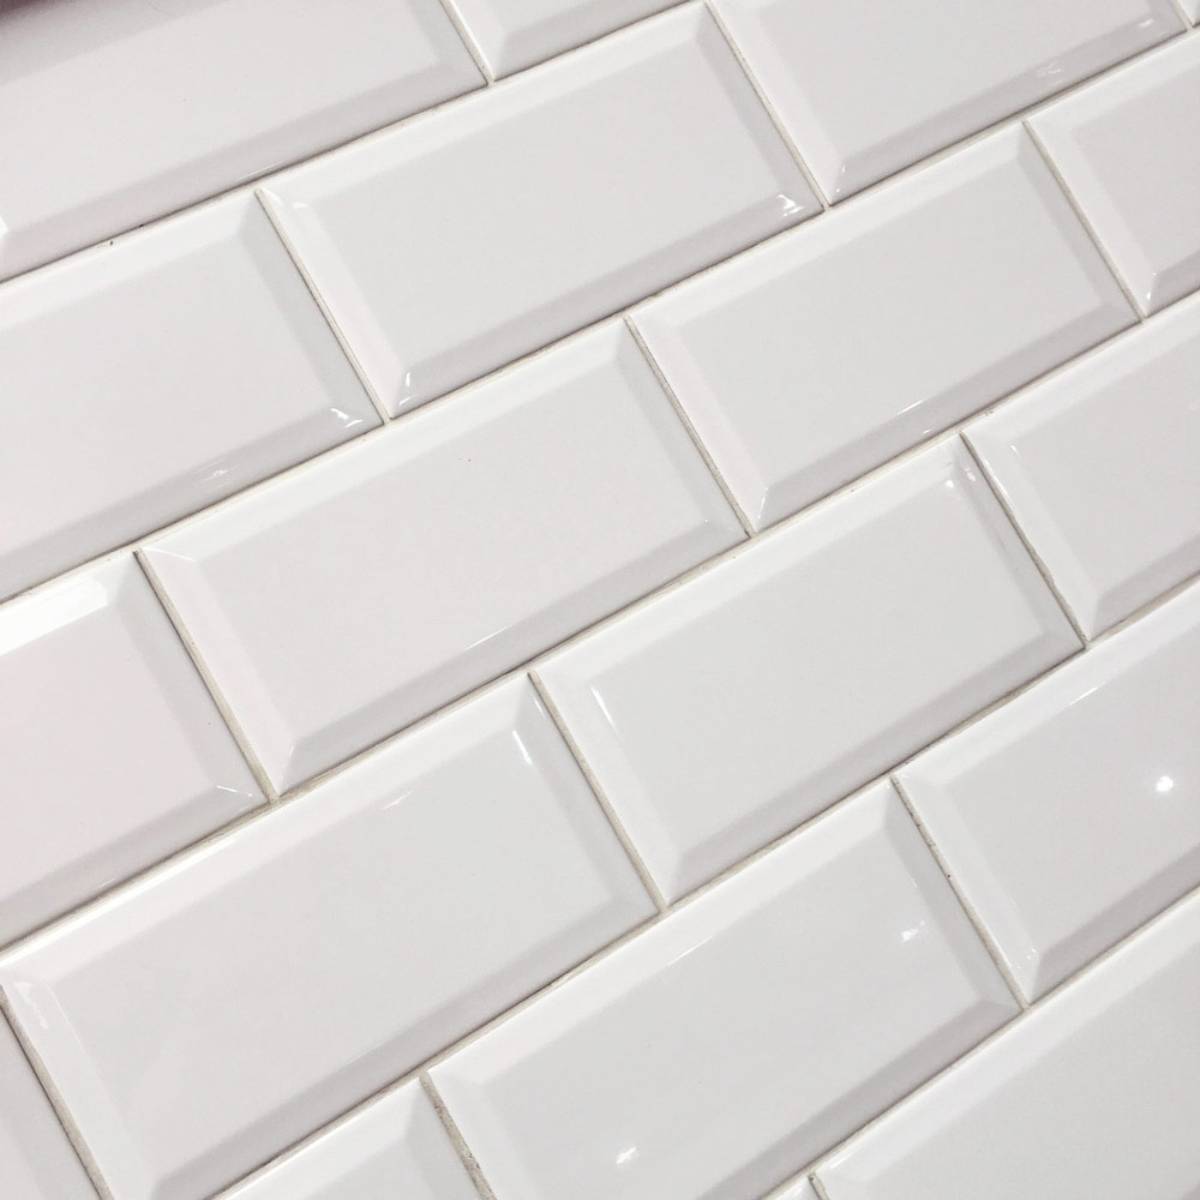 Metro White Biselado Brillo 10 x 20cm Ceramic Tile - 1sqm perbox (3123)